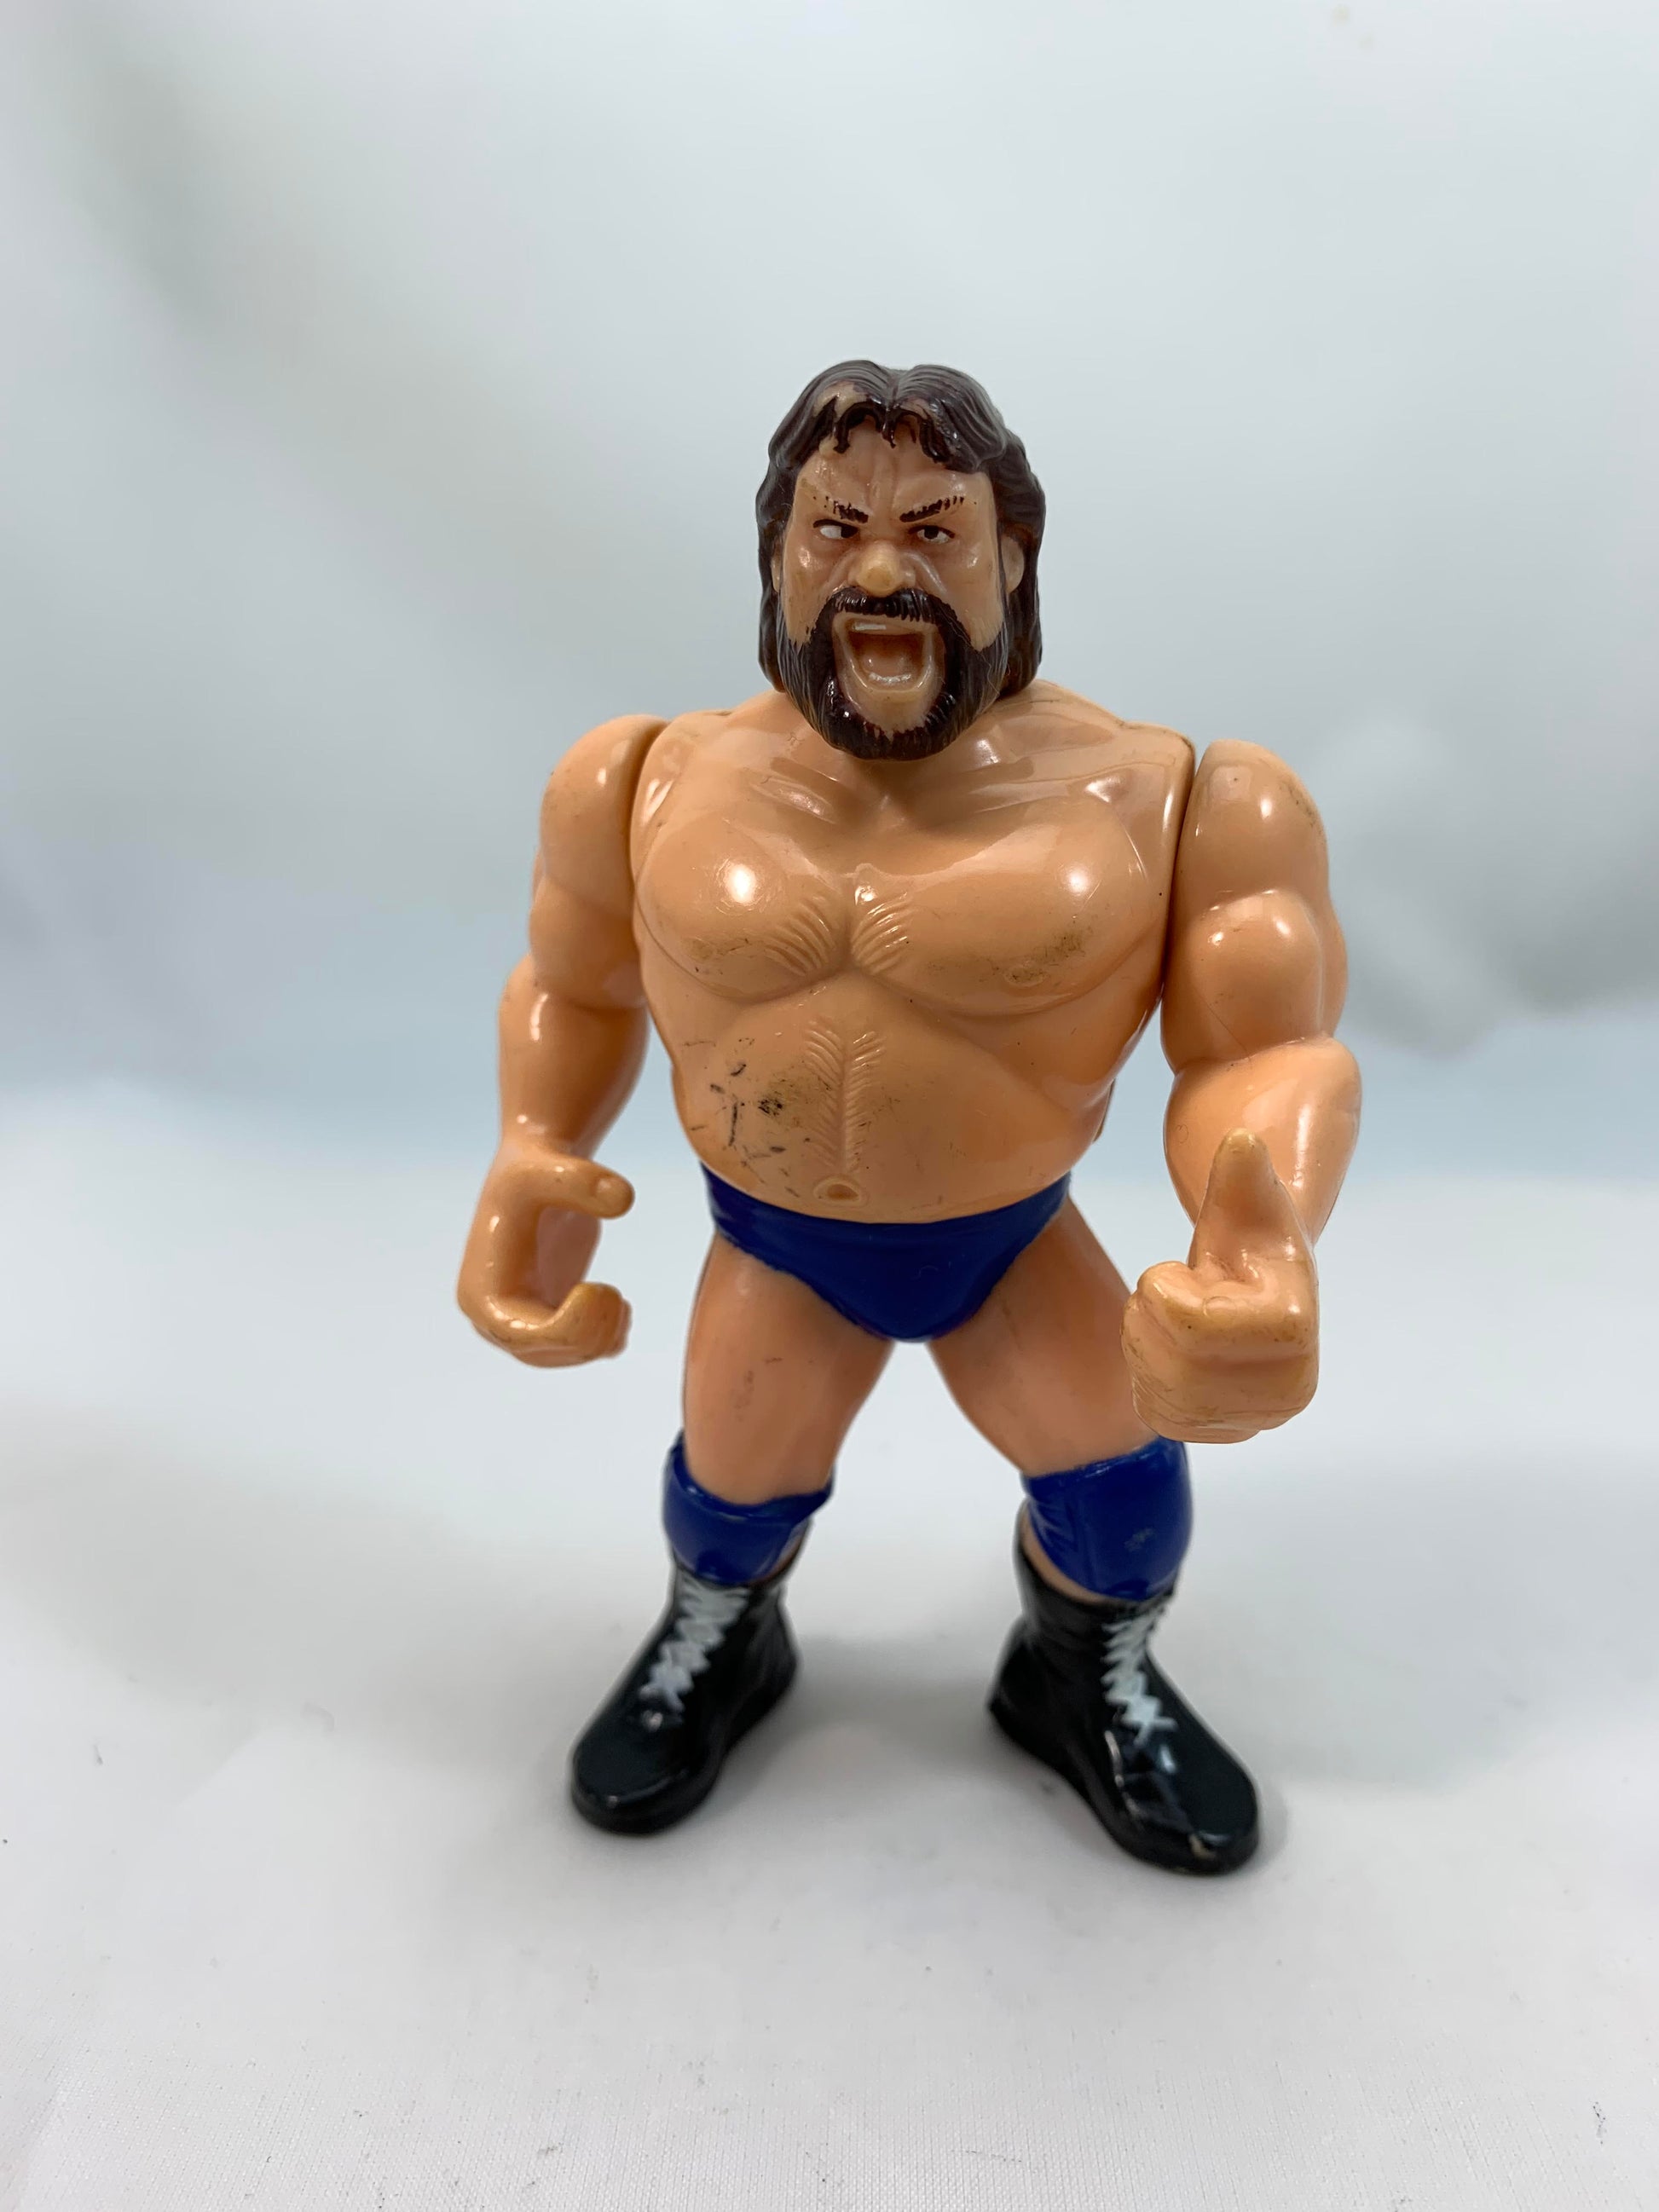 Hasbro - WWF - Hacksaw Jim Duggan - Wrestling Figure - 1991 - Loose